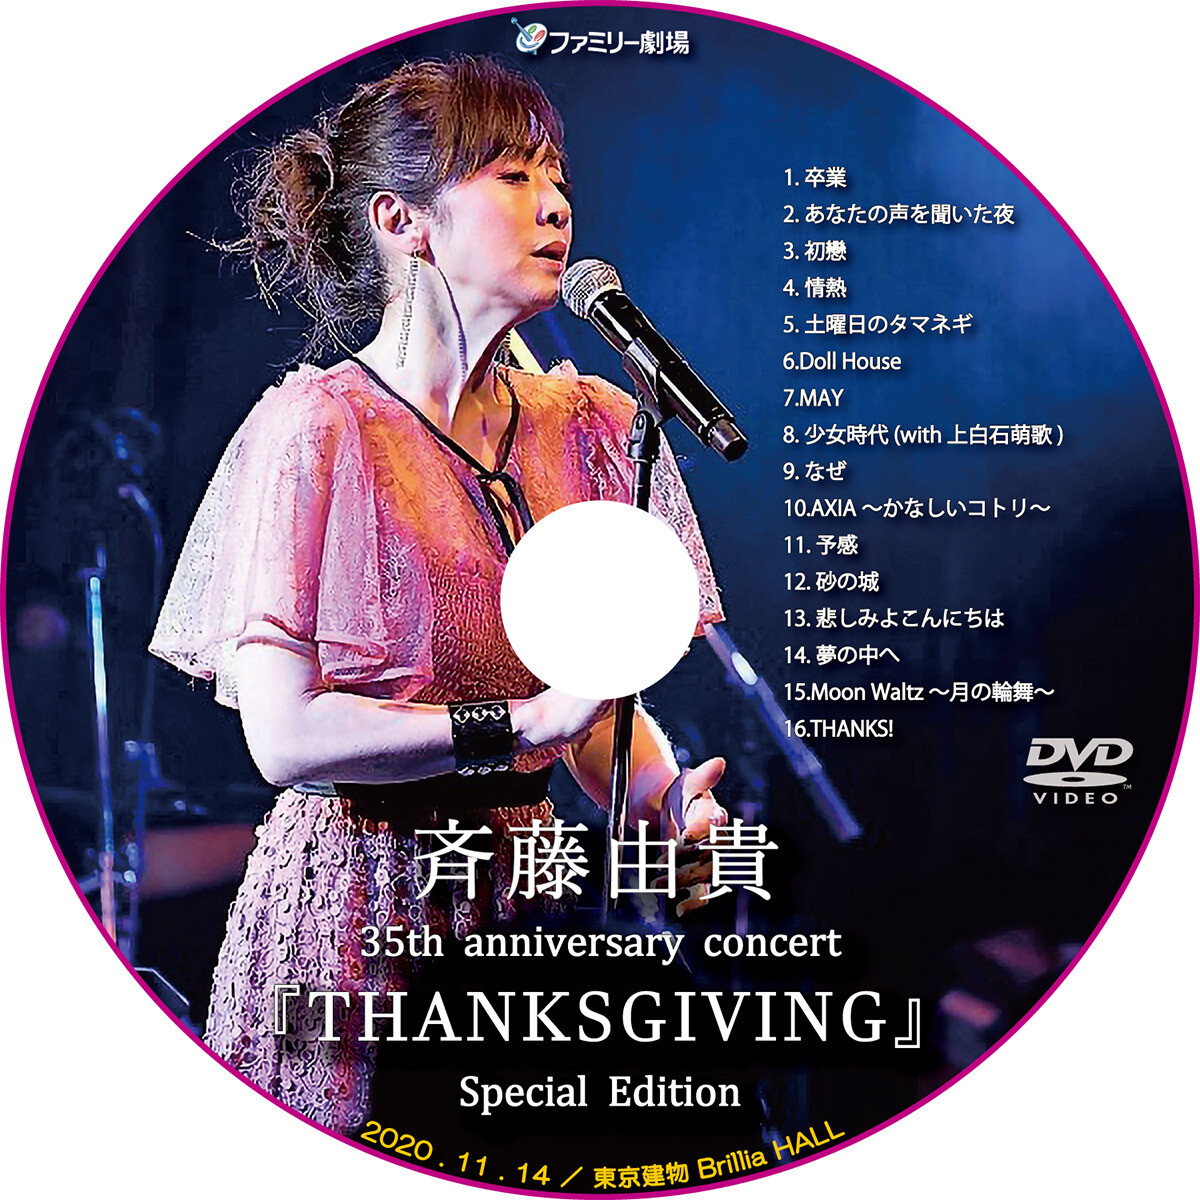 斉藤由貴 35th Anniversary Concert Thanksgiving Special Edition ファミリー劇場 レーベル屋さん